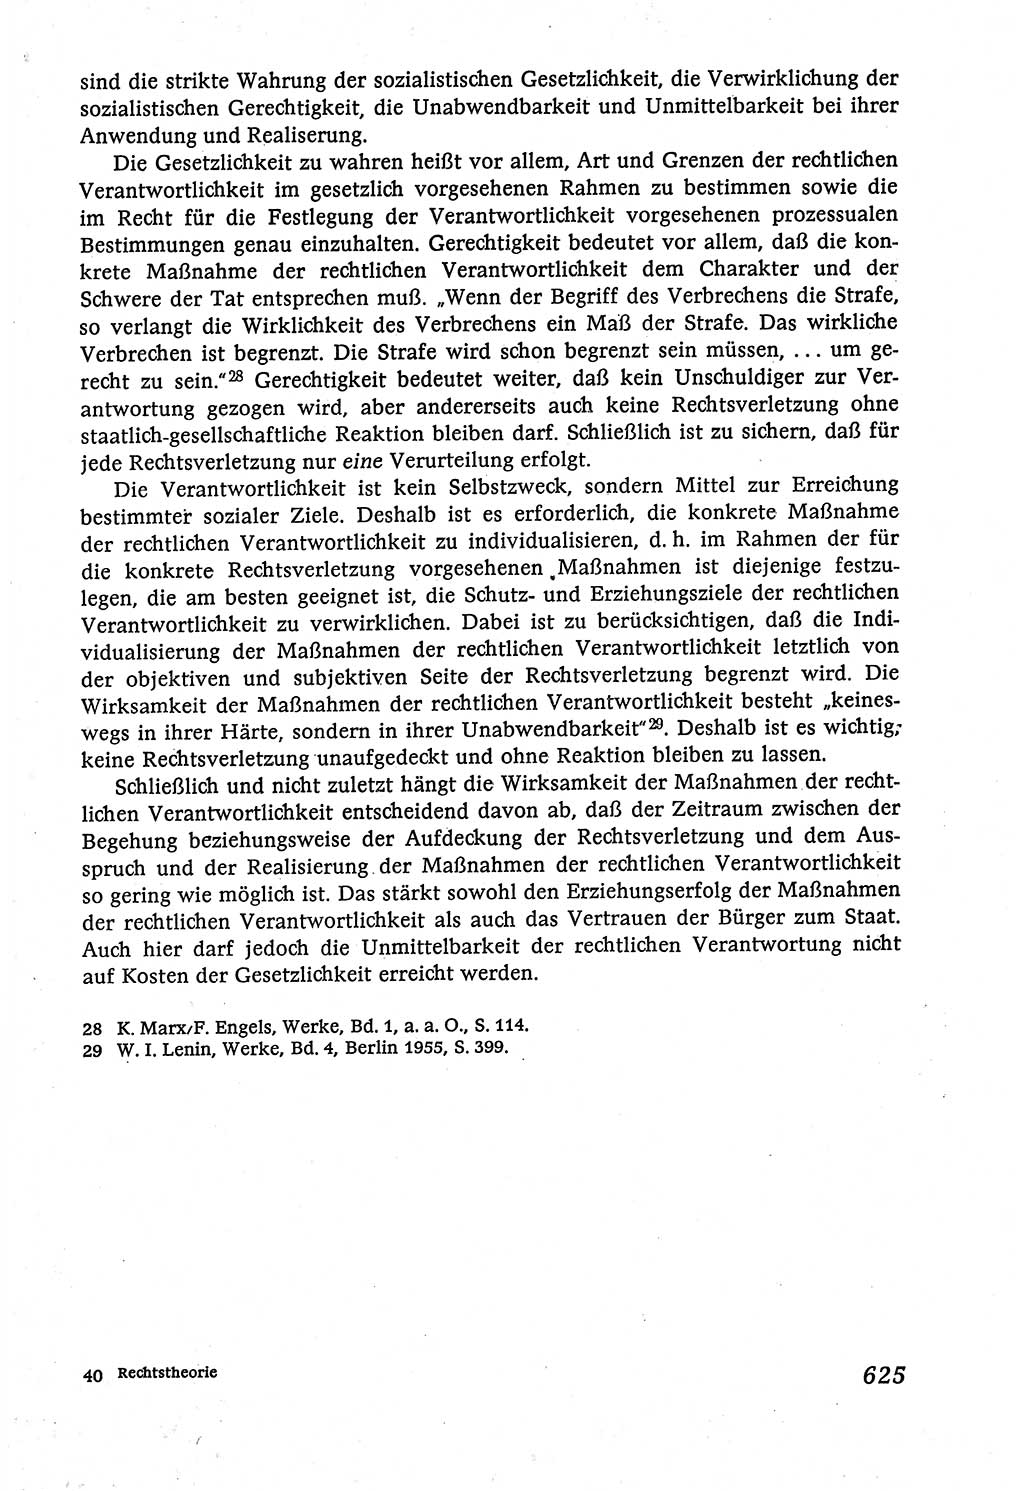 Marxistisch-leninistische (ML) Staats- und Rechtstheorie [Deutsche Demokratische Republik (DDR)], Lehrbuch 1980, Seite 625 (ML St.-R.-Th. DDR Lb. 1980, S. 625)